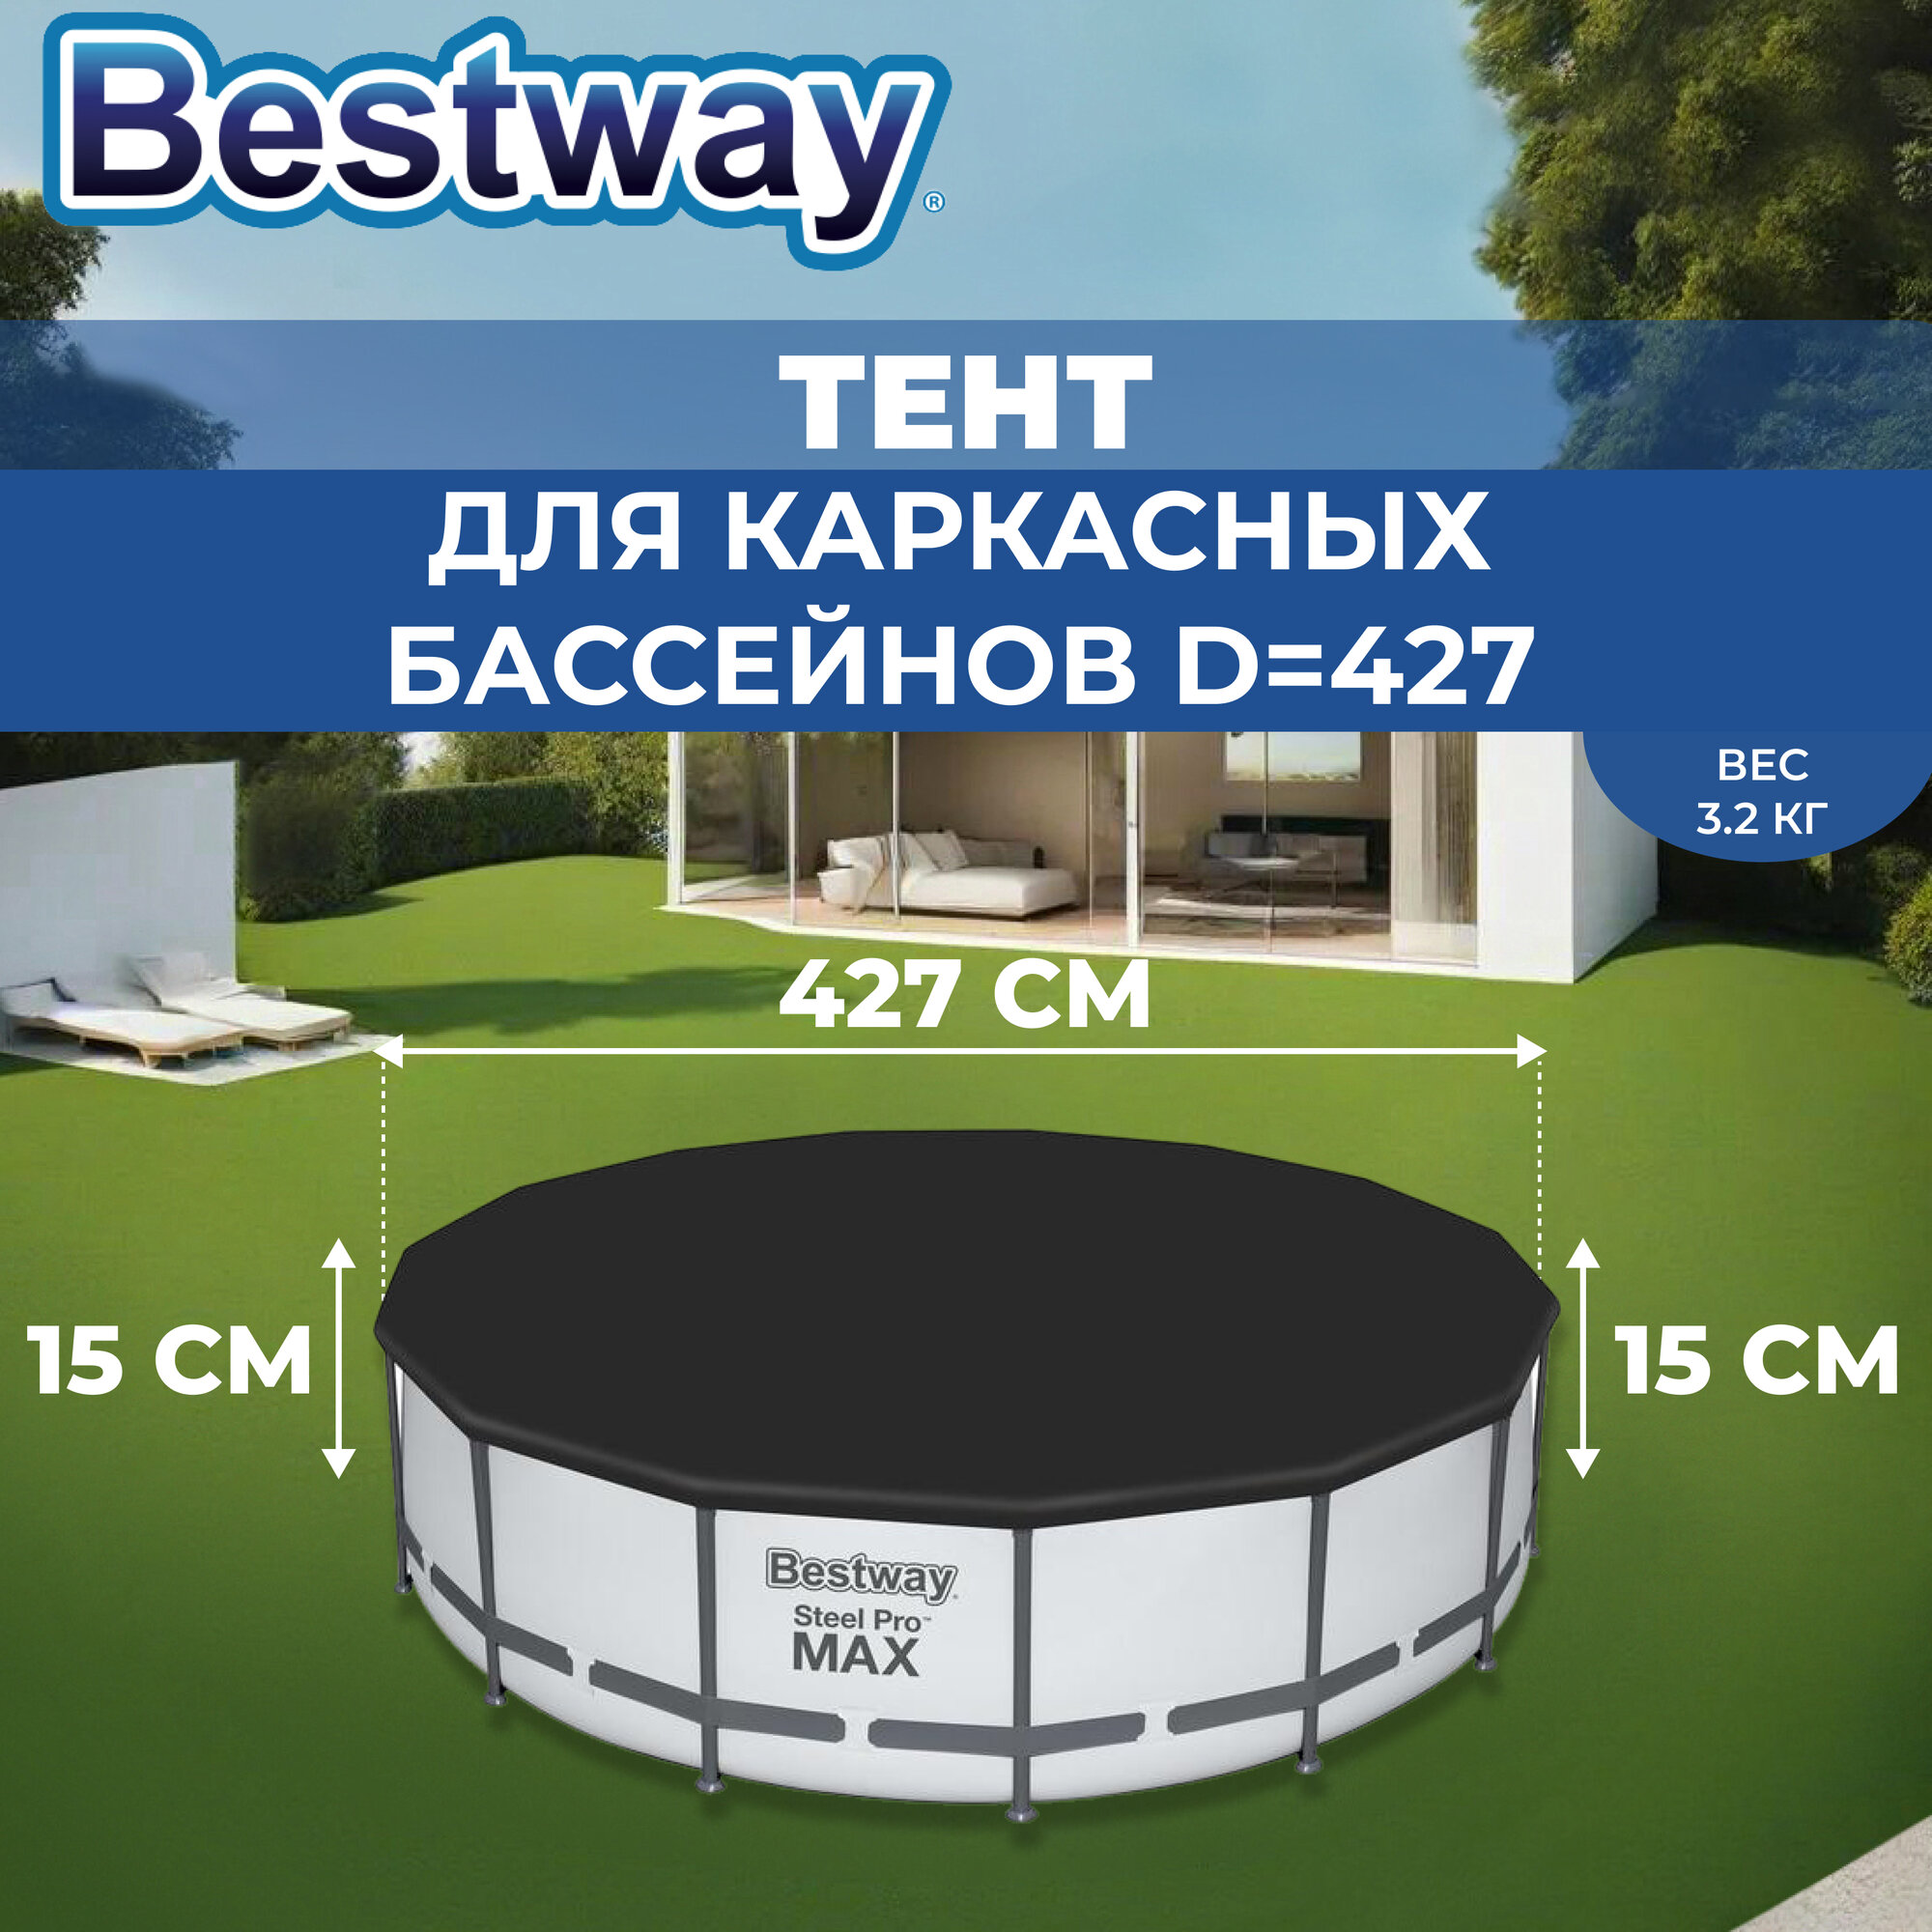 Тент для каркасных бассейнов Bestway, d=427 см